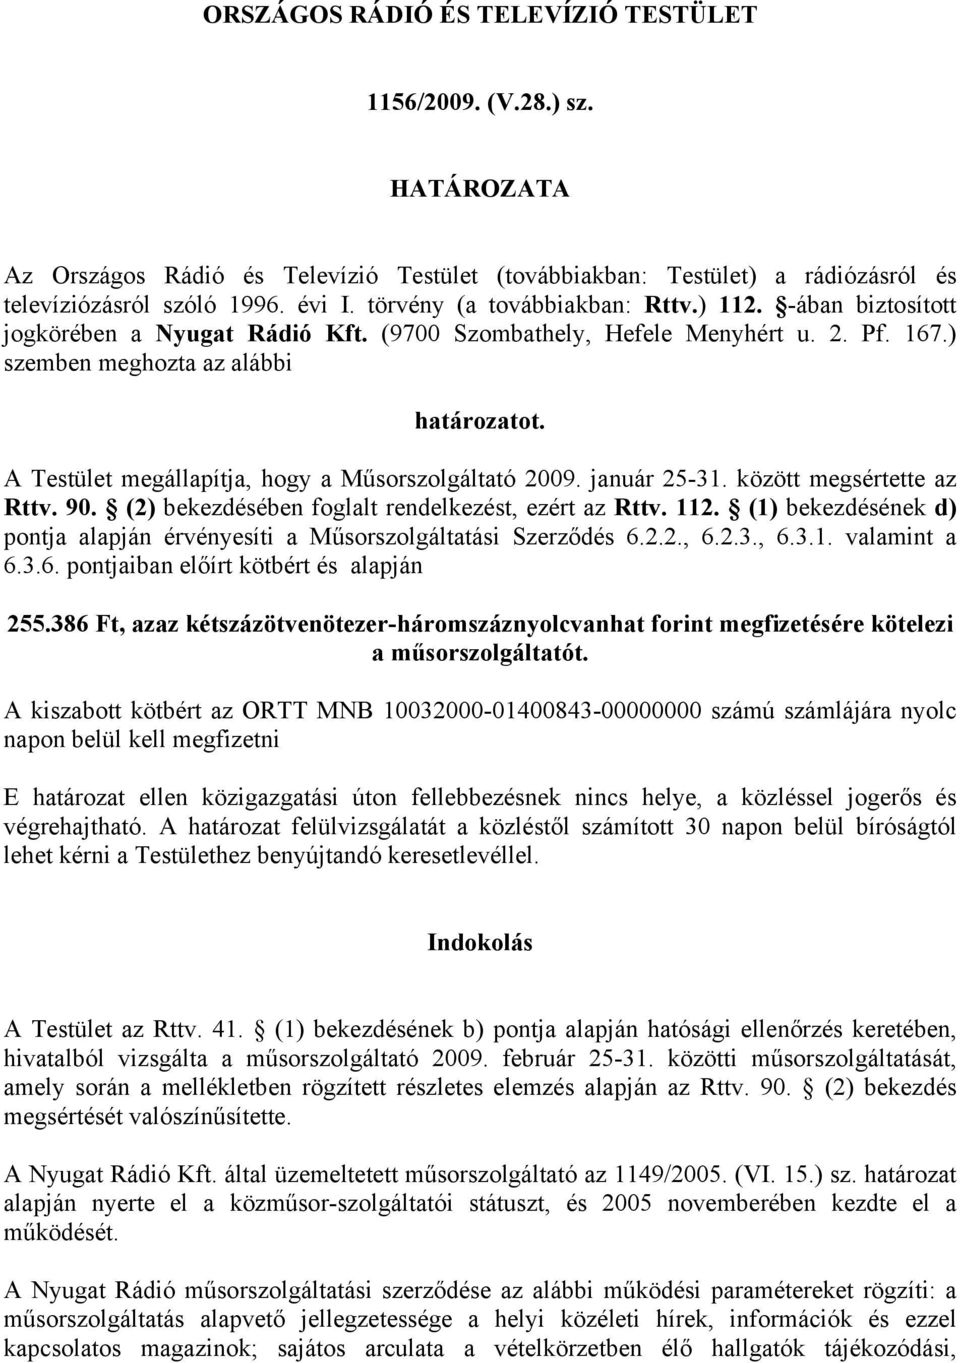 A Testület megállapítja, hogy a Műsorszolgáltató 2009. január 25-31. között megsértette az Rttv. 90. (2) bekezdésében foglalt rendelkezést, ezért az Rttv. 112.